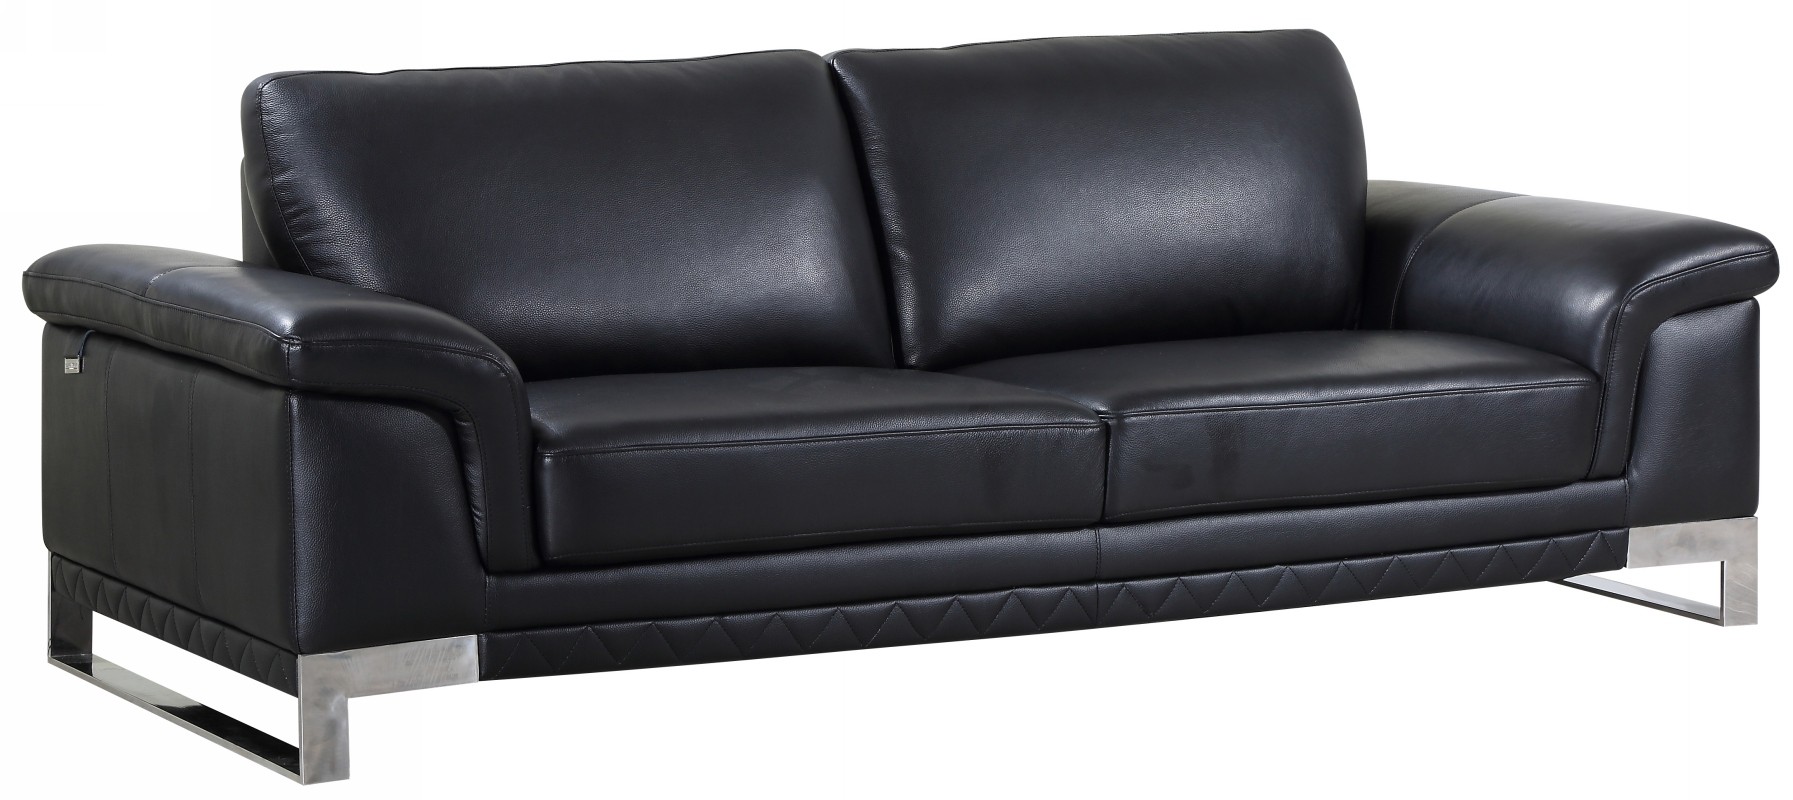 nicolette luxury italian black leather sofa